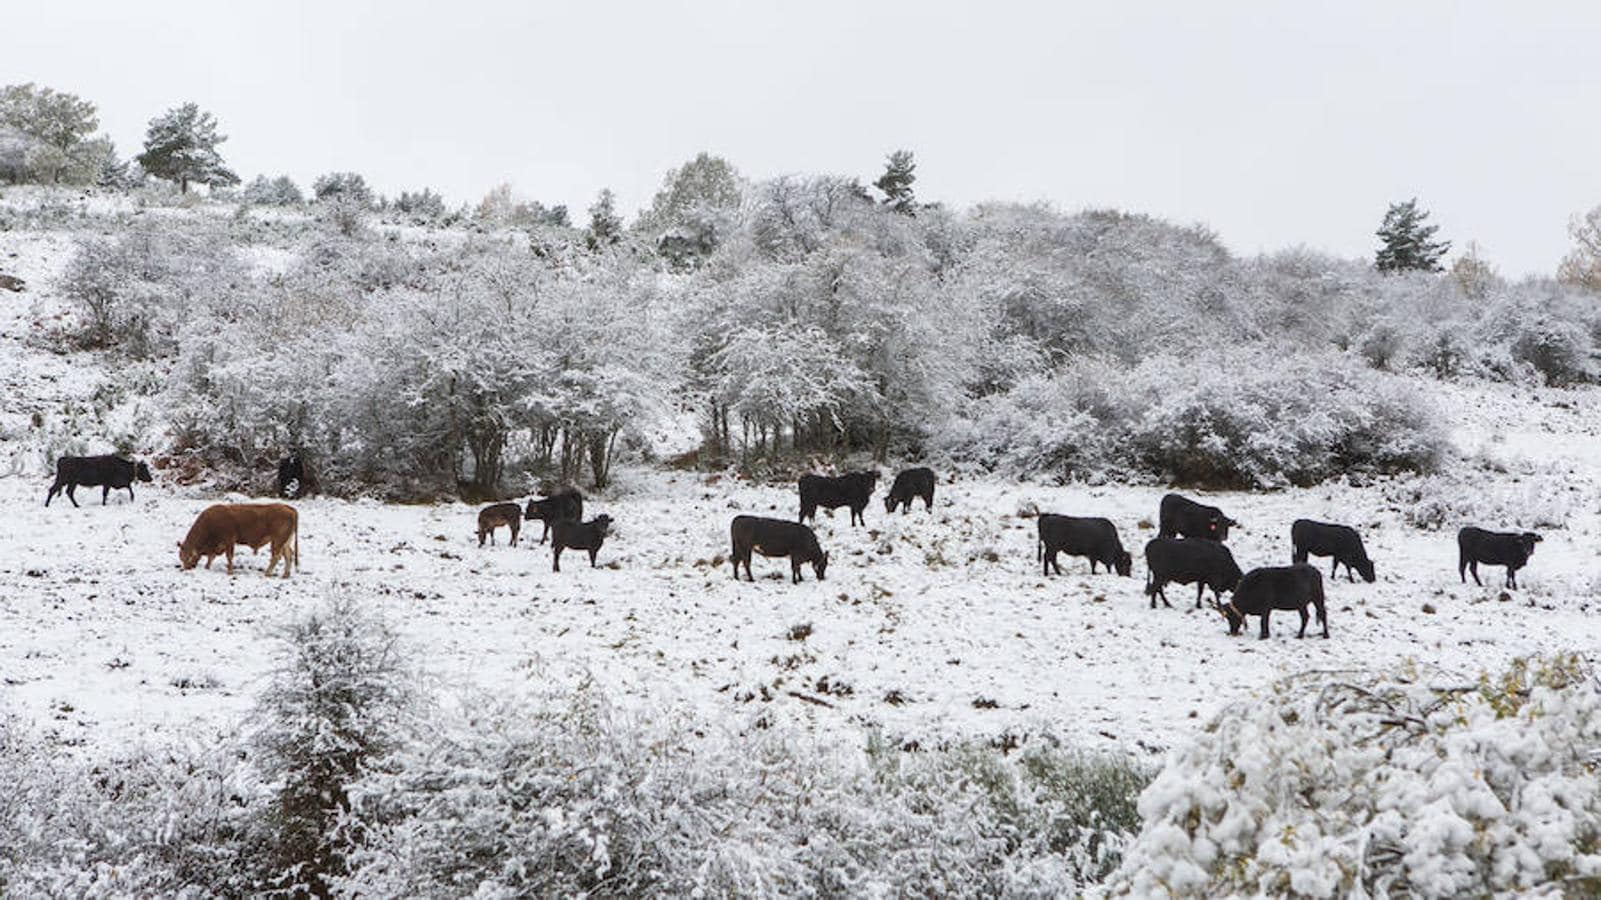 La nieve empieza a dominar el terreno y a rodear el valle riojano. La Rioja empieza a lucir un manto blanco muy esperado dada la sequía reinante en el campo. «La nieve es la sangre de la tierra», dicen los veteranos que viven en las zonas rurales de montaña